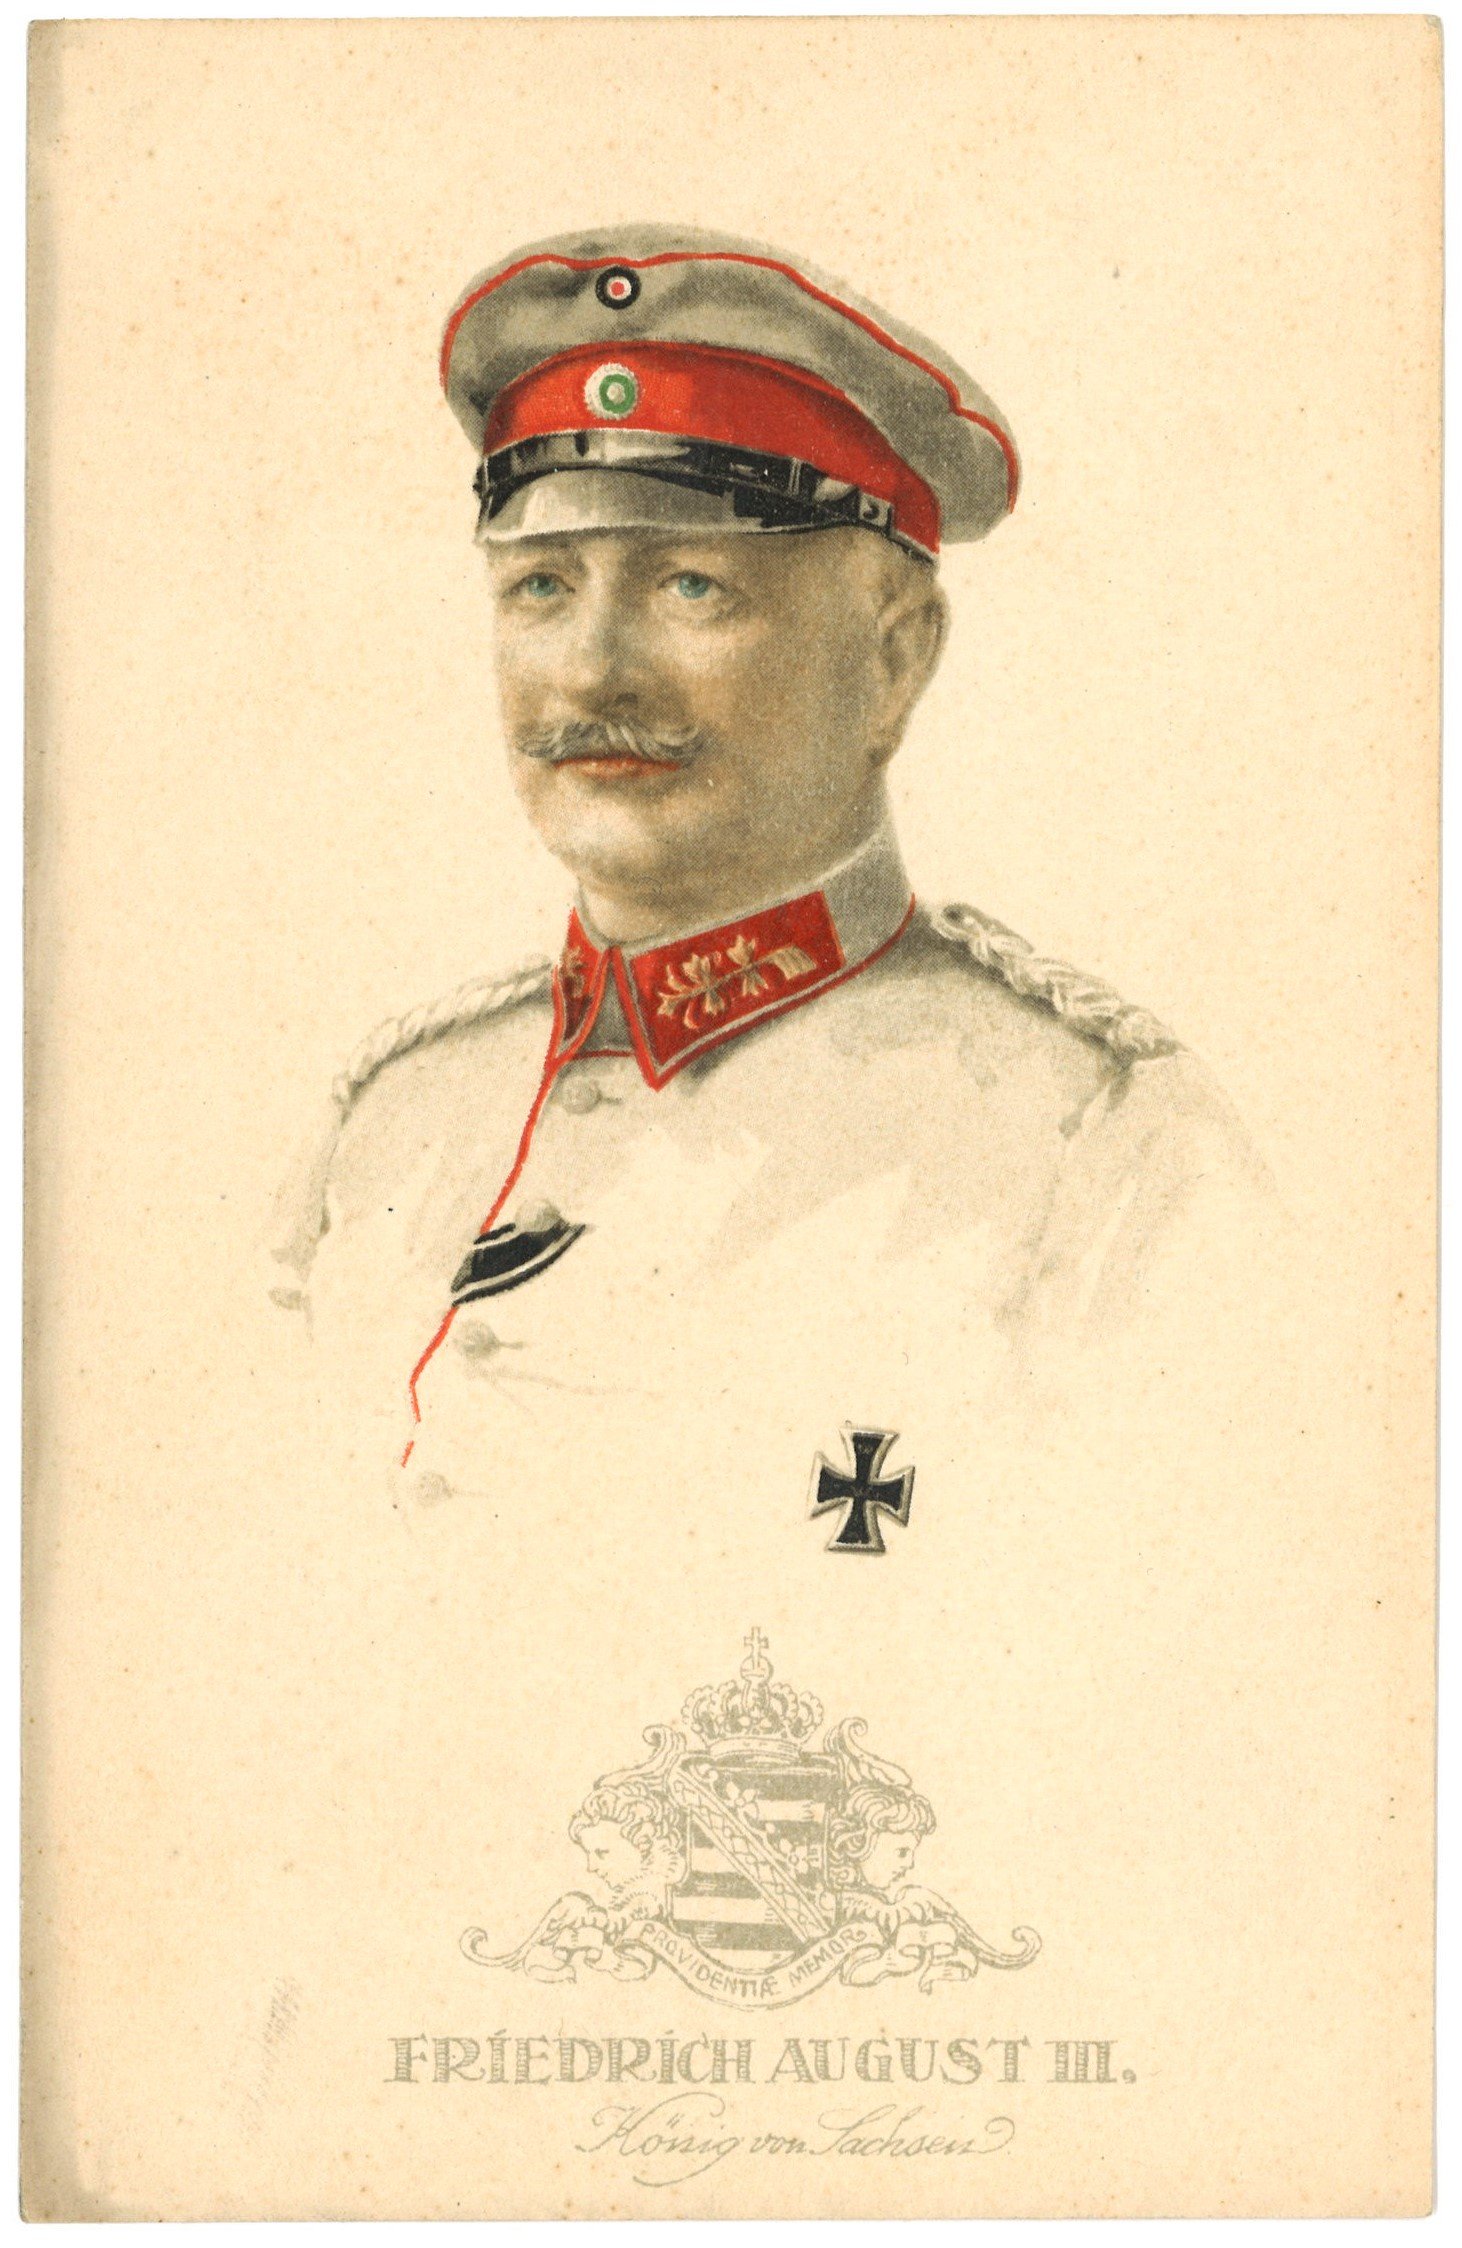 Friedrich August III., König von Sachsen (1865–1932) (Landesgeschichtliche Vereinigung für die Mark Brandenburg e.V. CC BY)